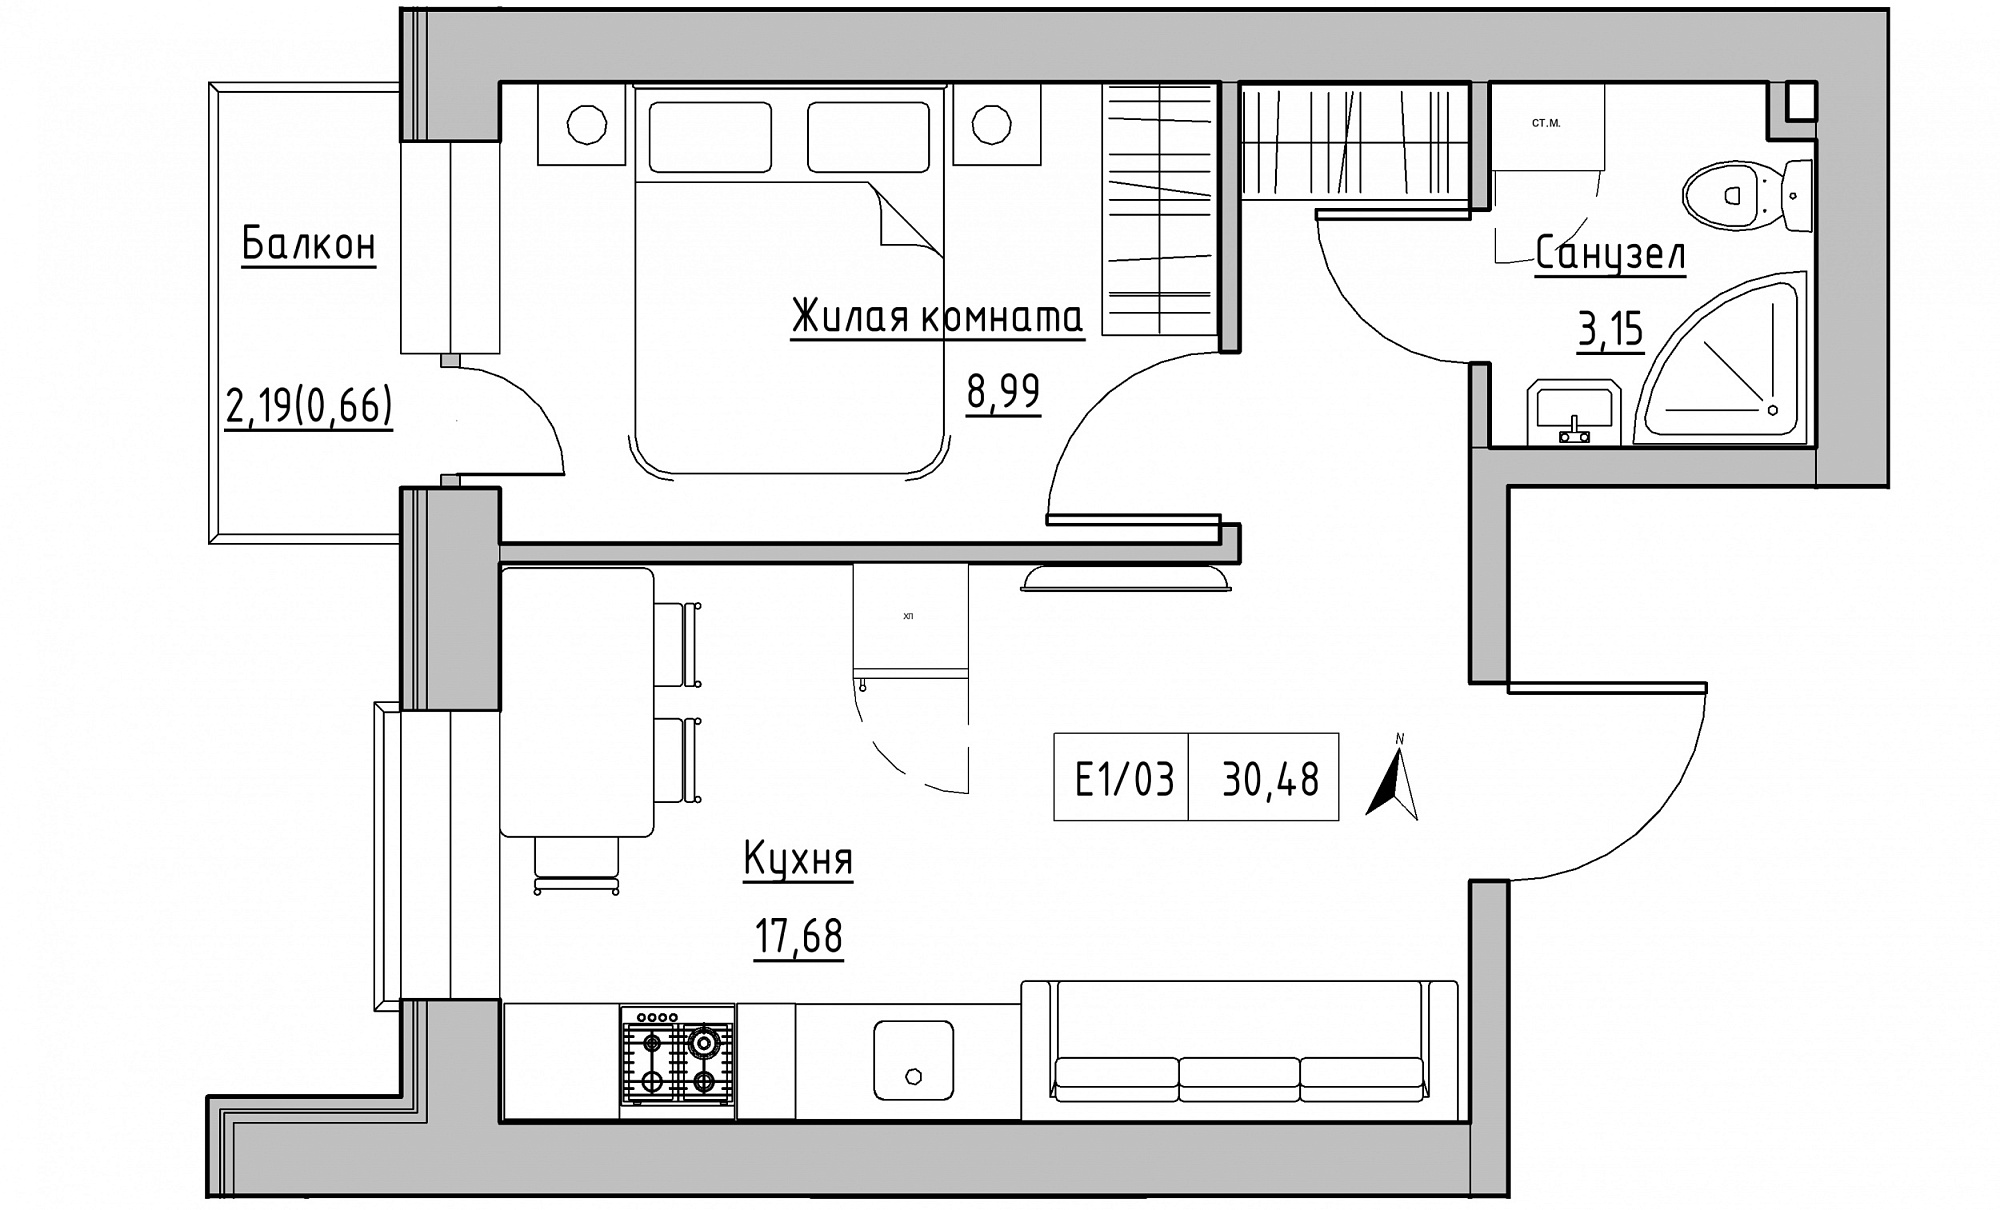 Планировка 1-к квартира площей 30.48м2, KS-015-02/0003.